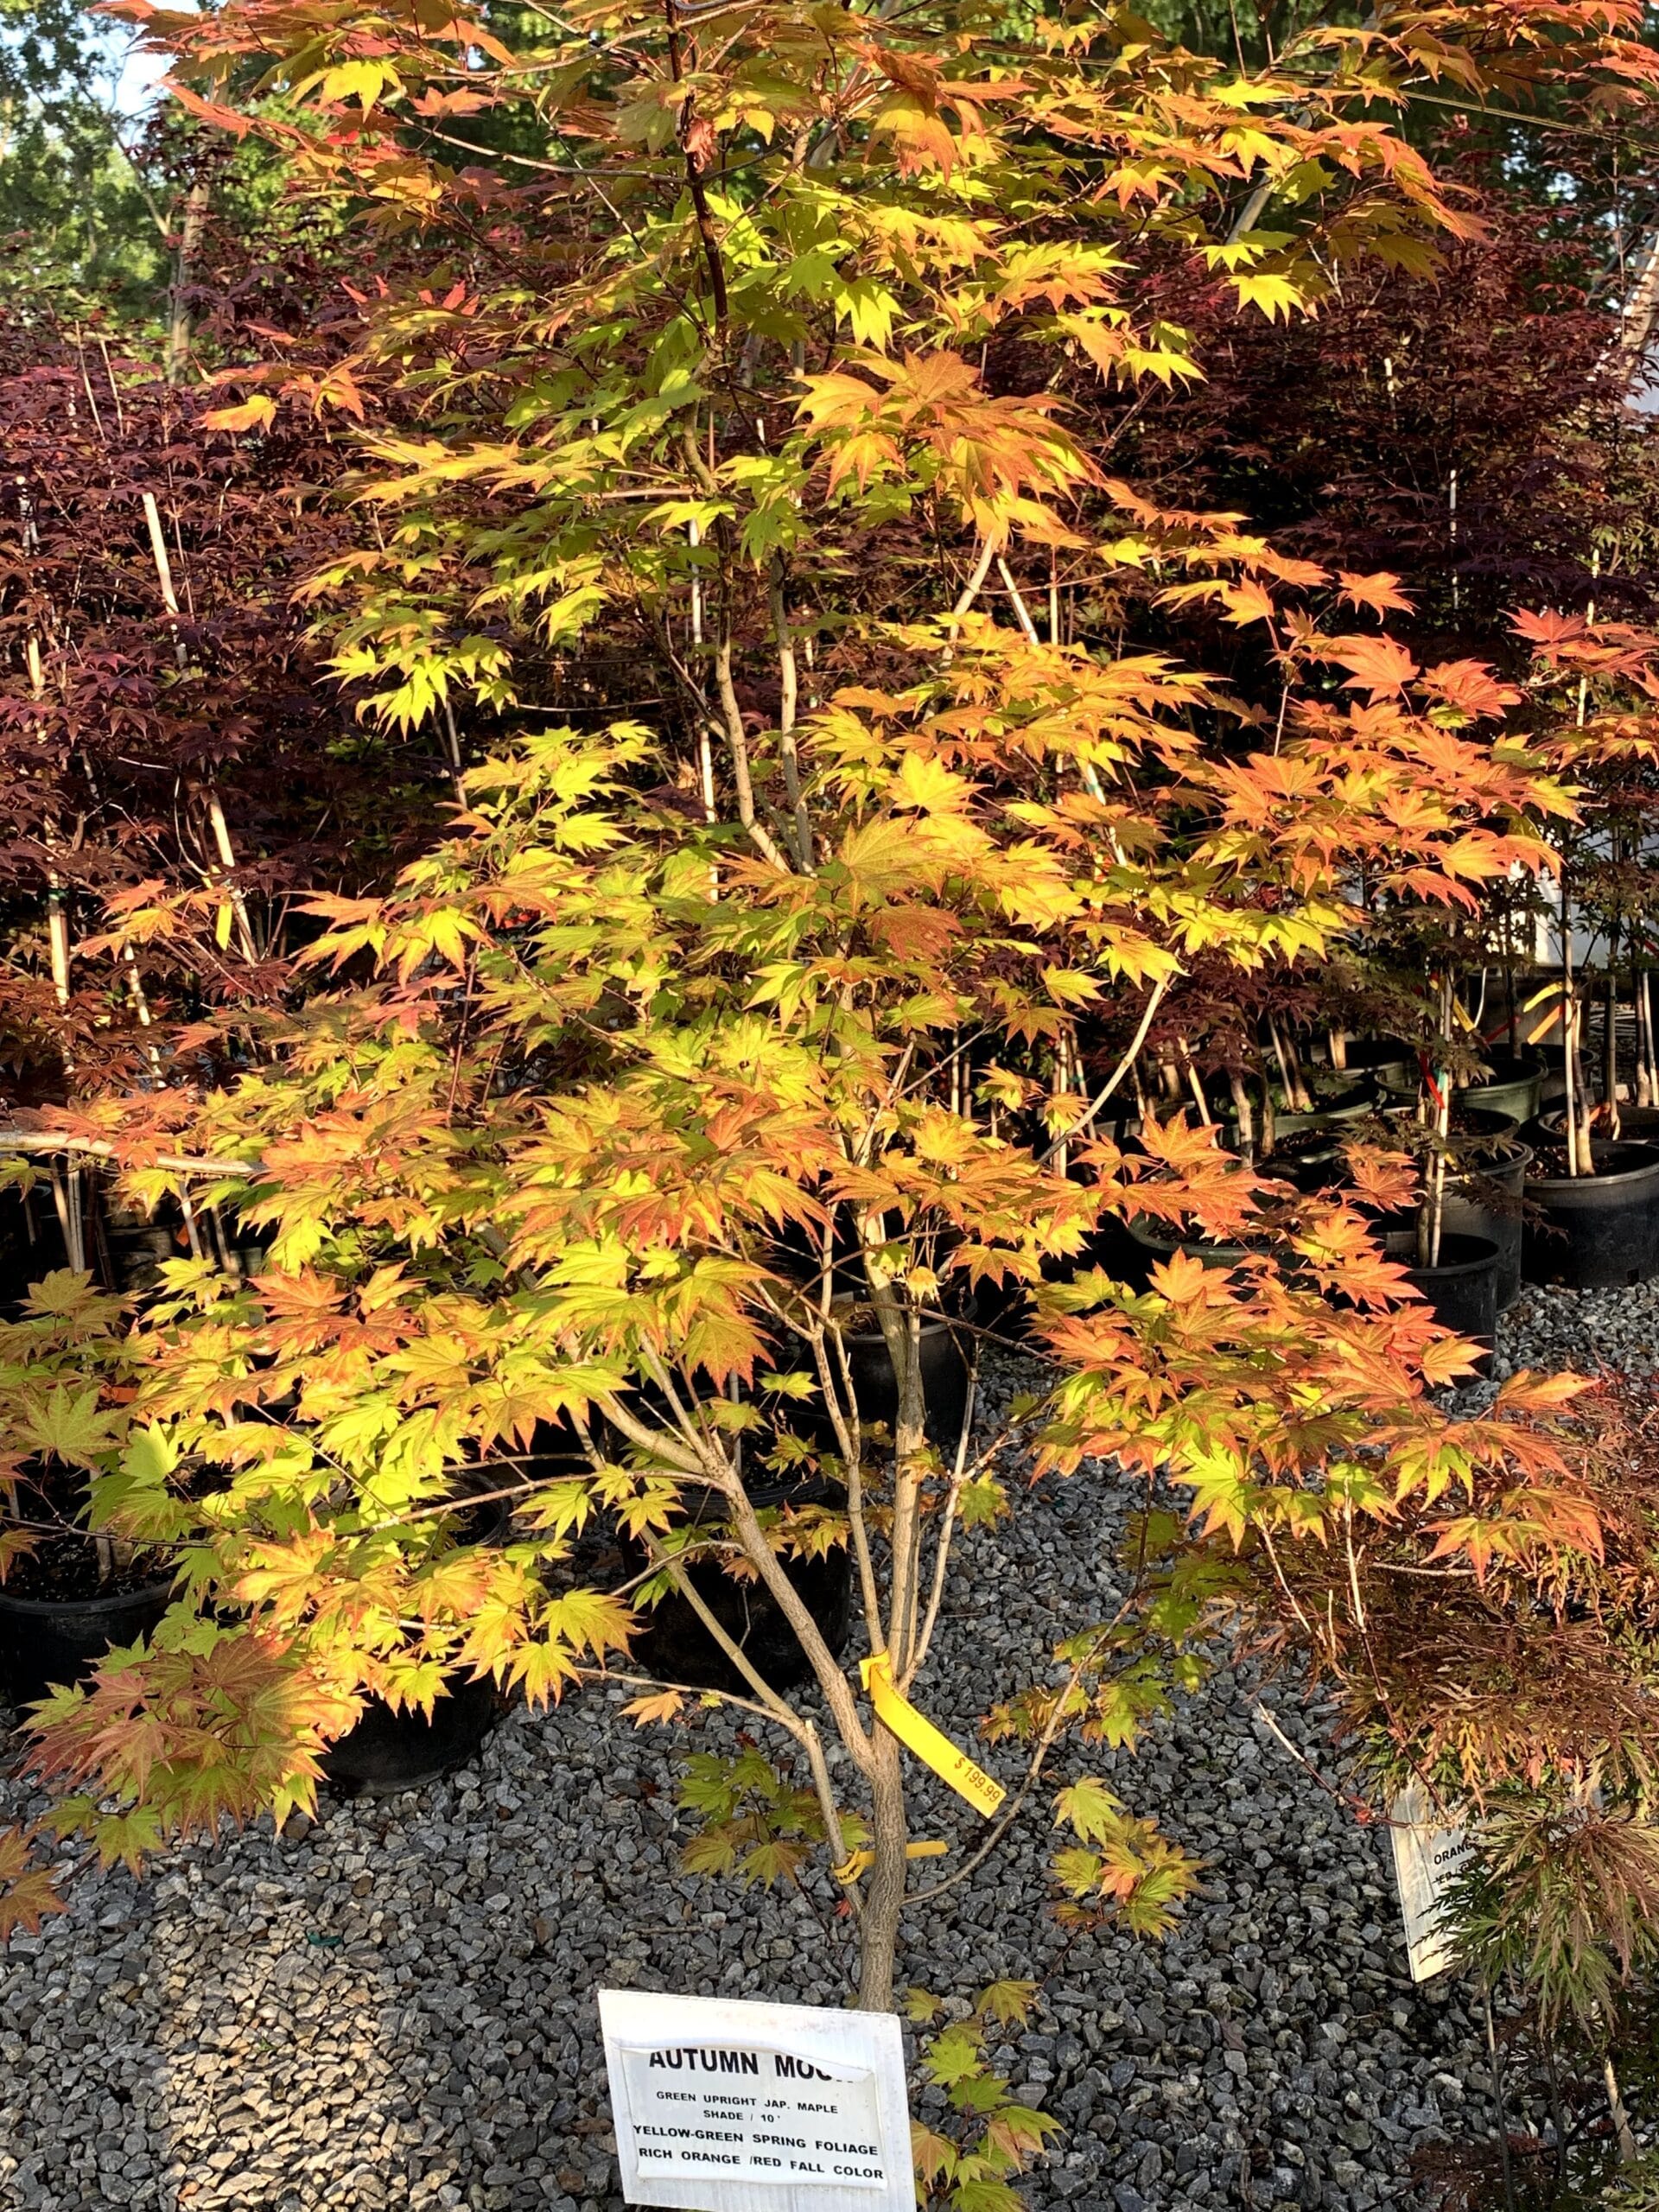 Autumn Moon Japanese Maple